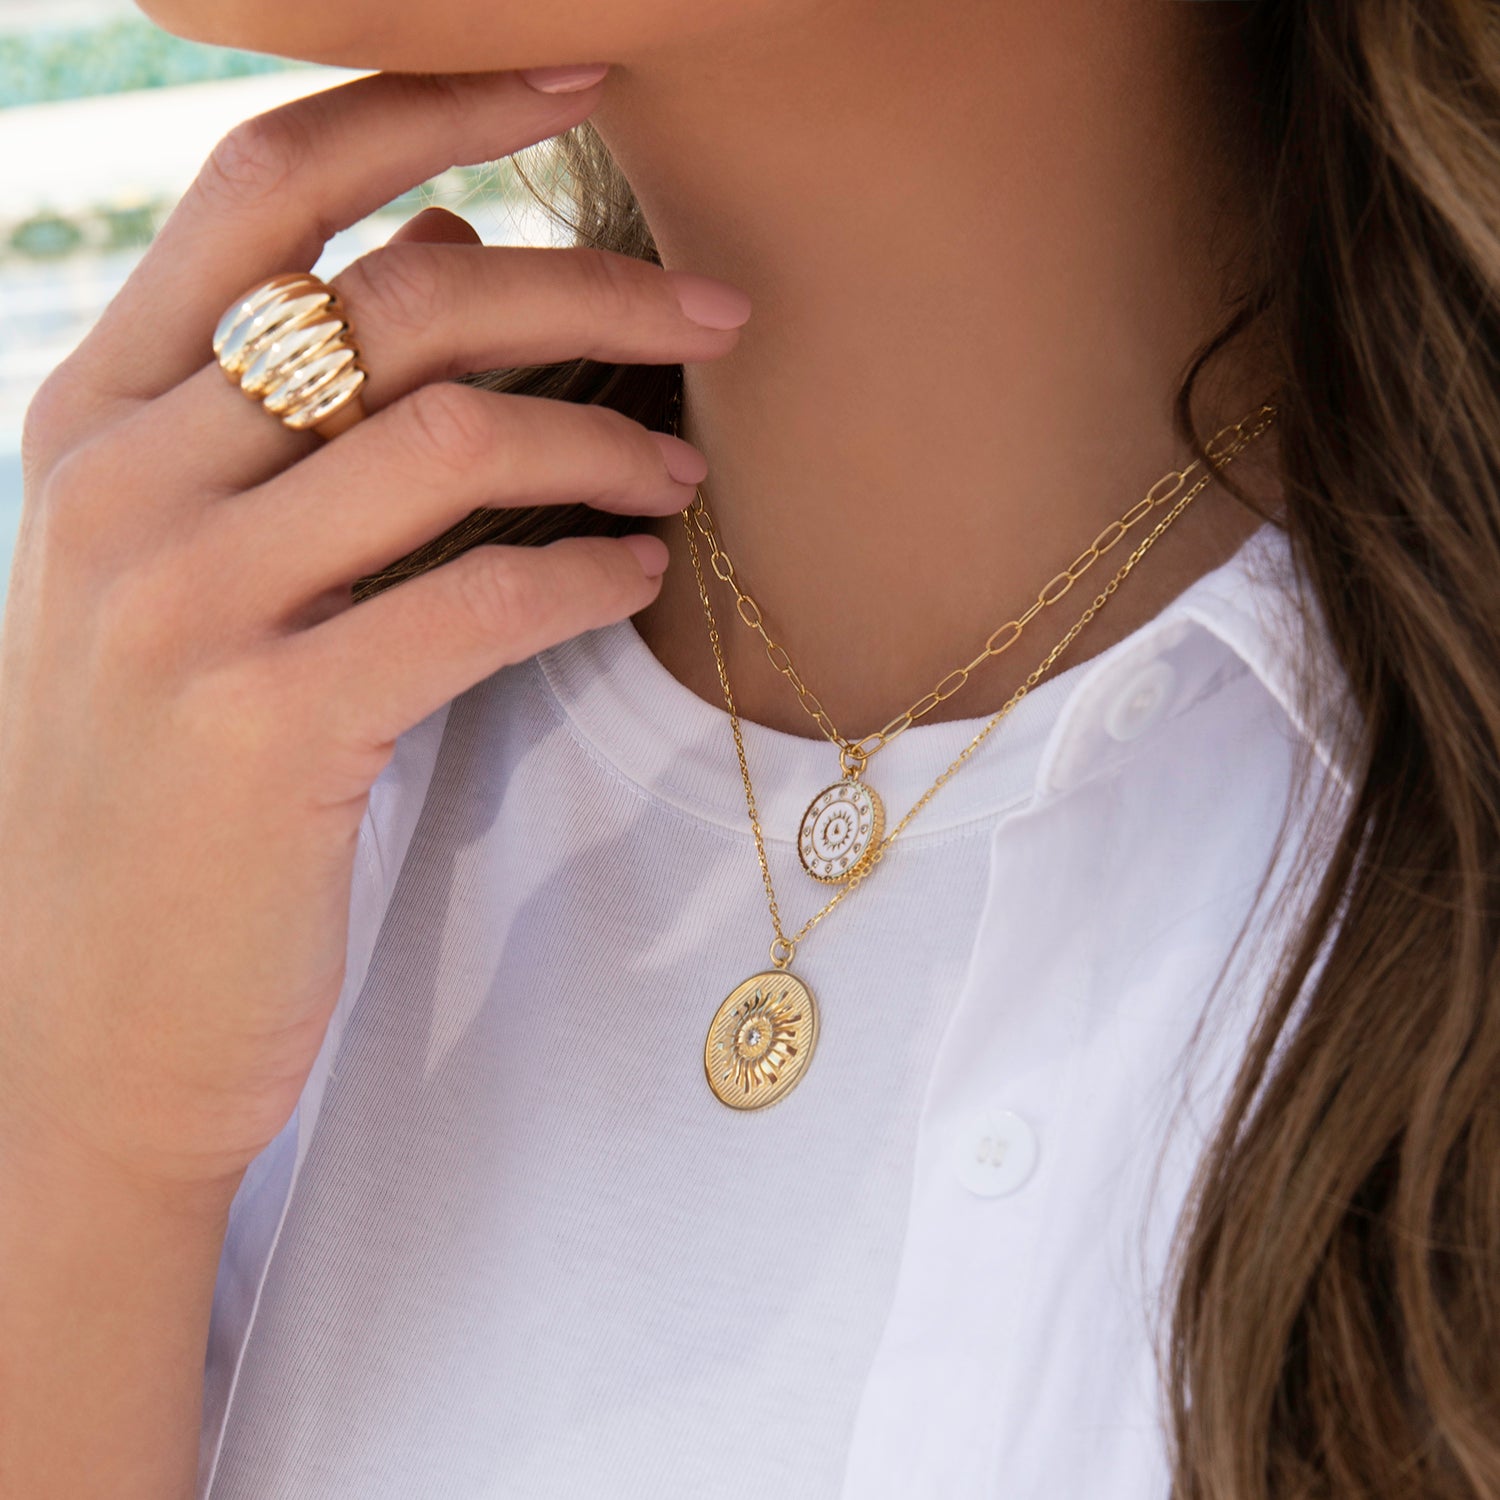 5/16 cobra chain necklace – Marlyn Schiff, LLC